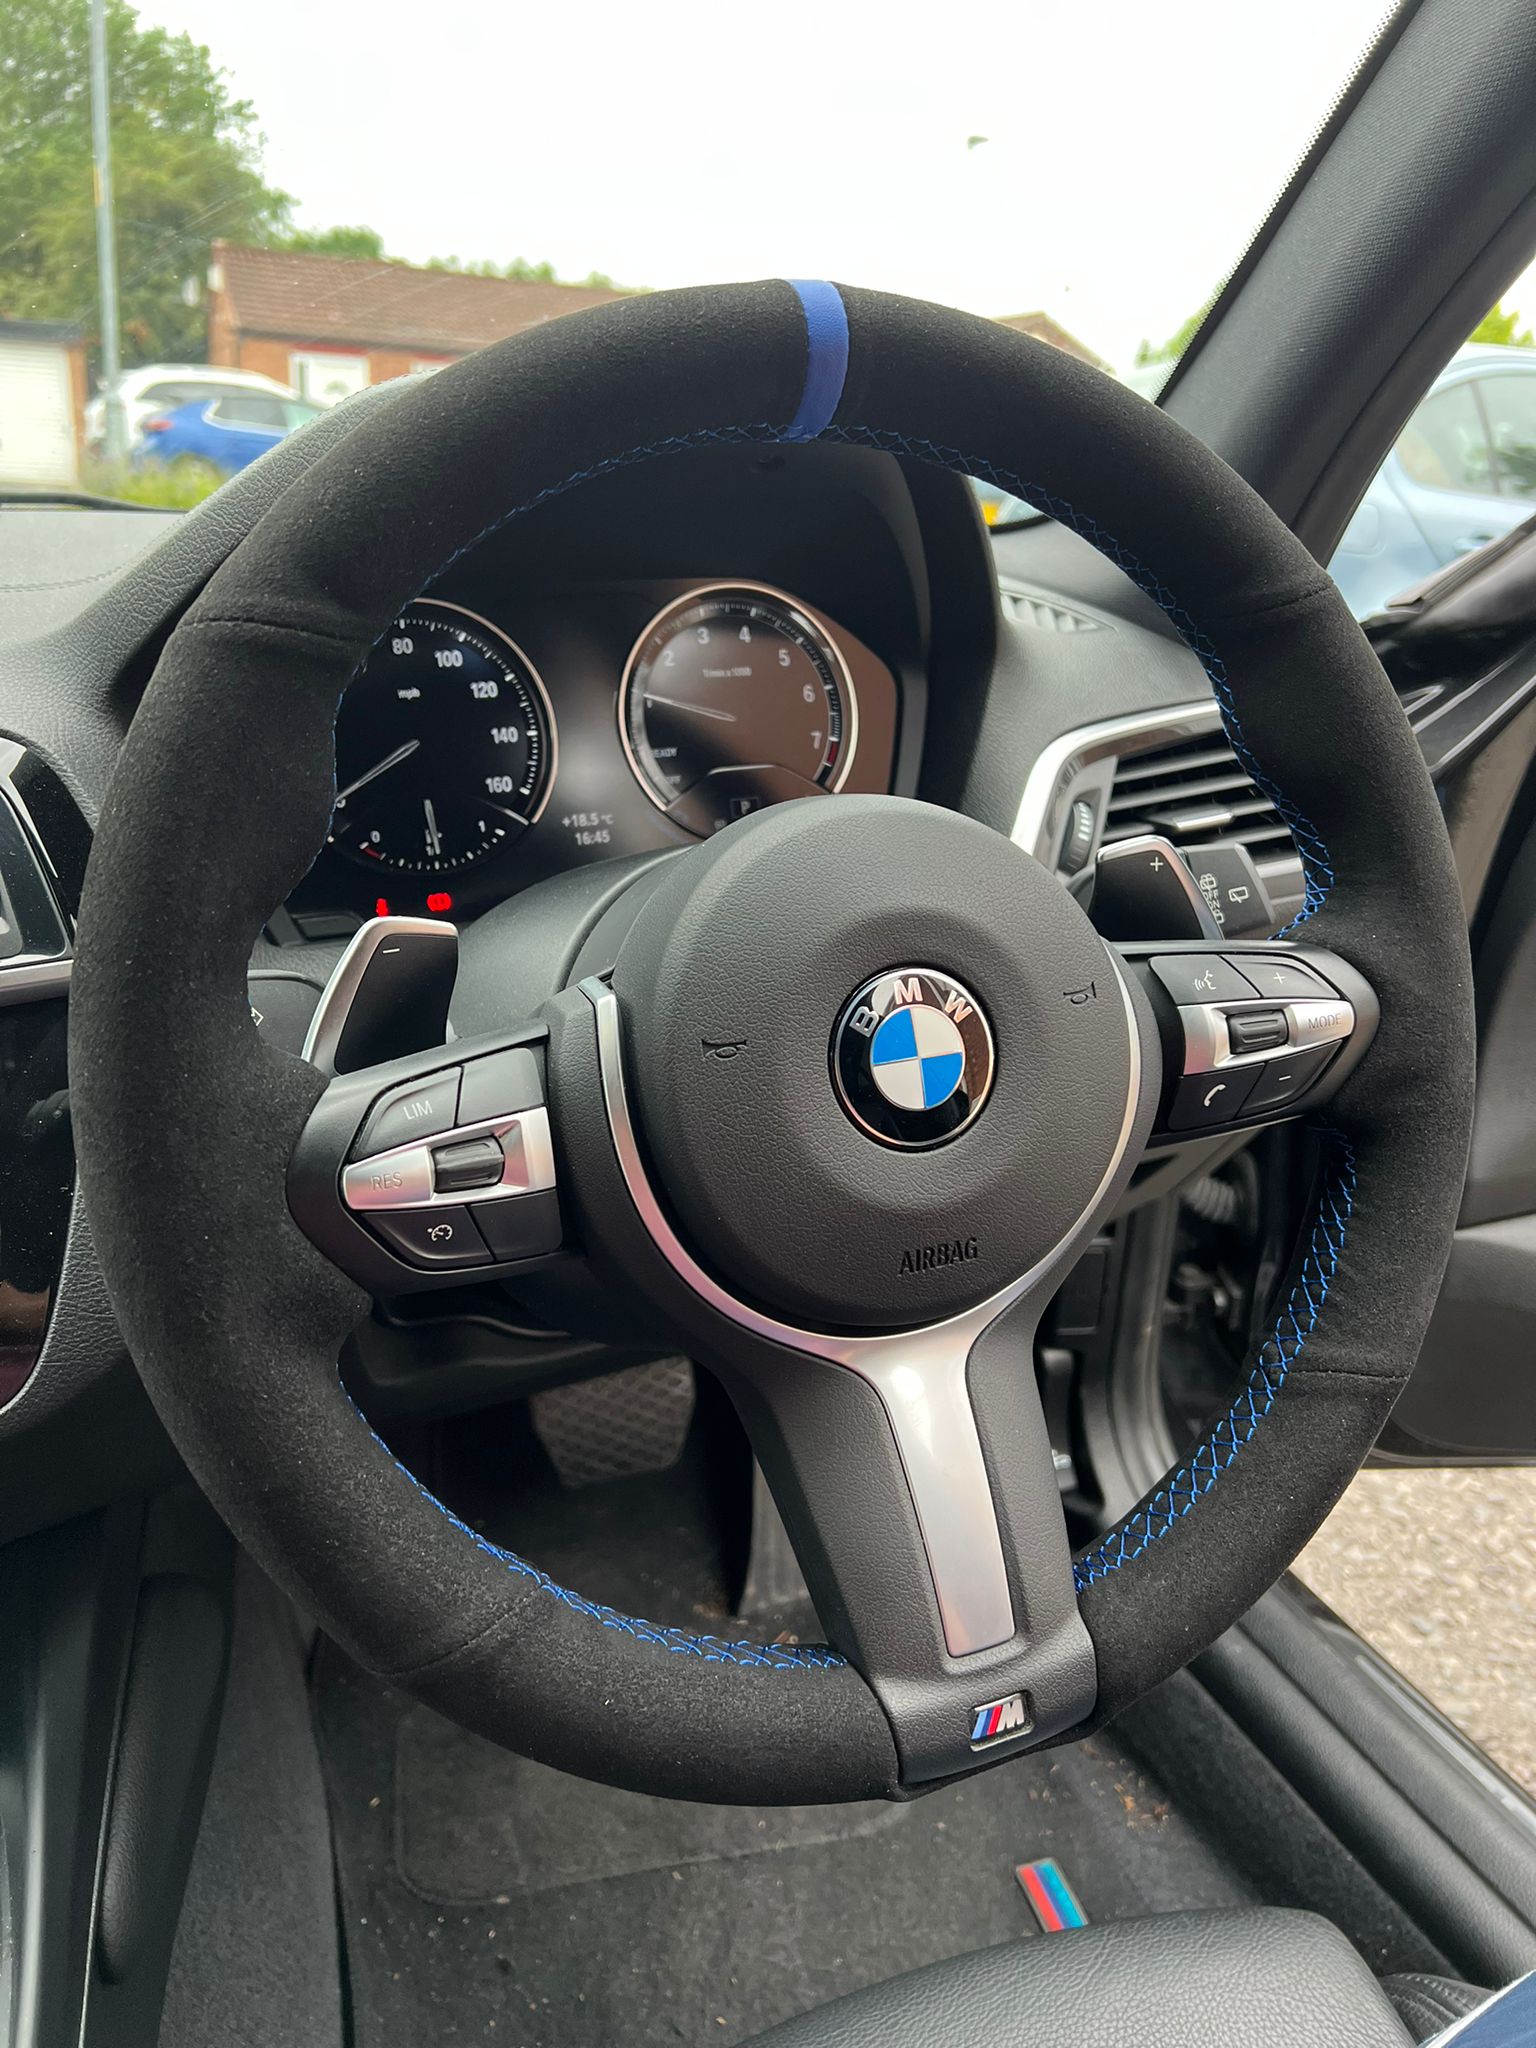 BMW Steering Wheel Cover – MiiiMods